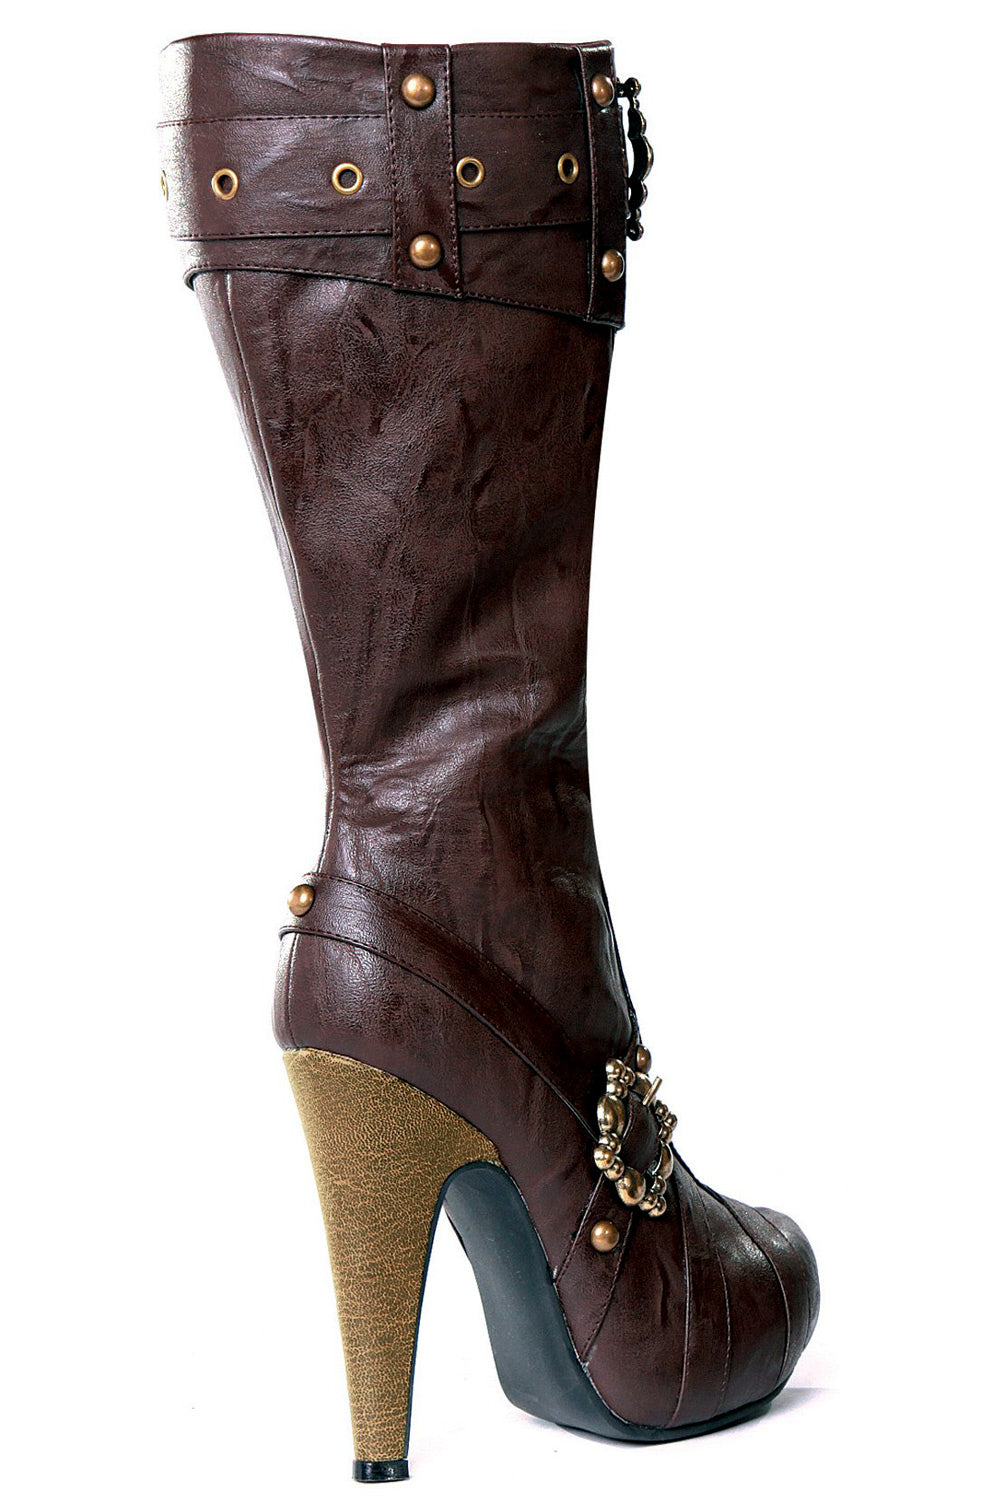 426-Aubrey Boots